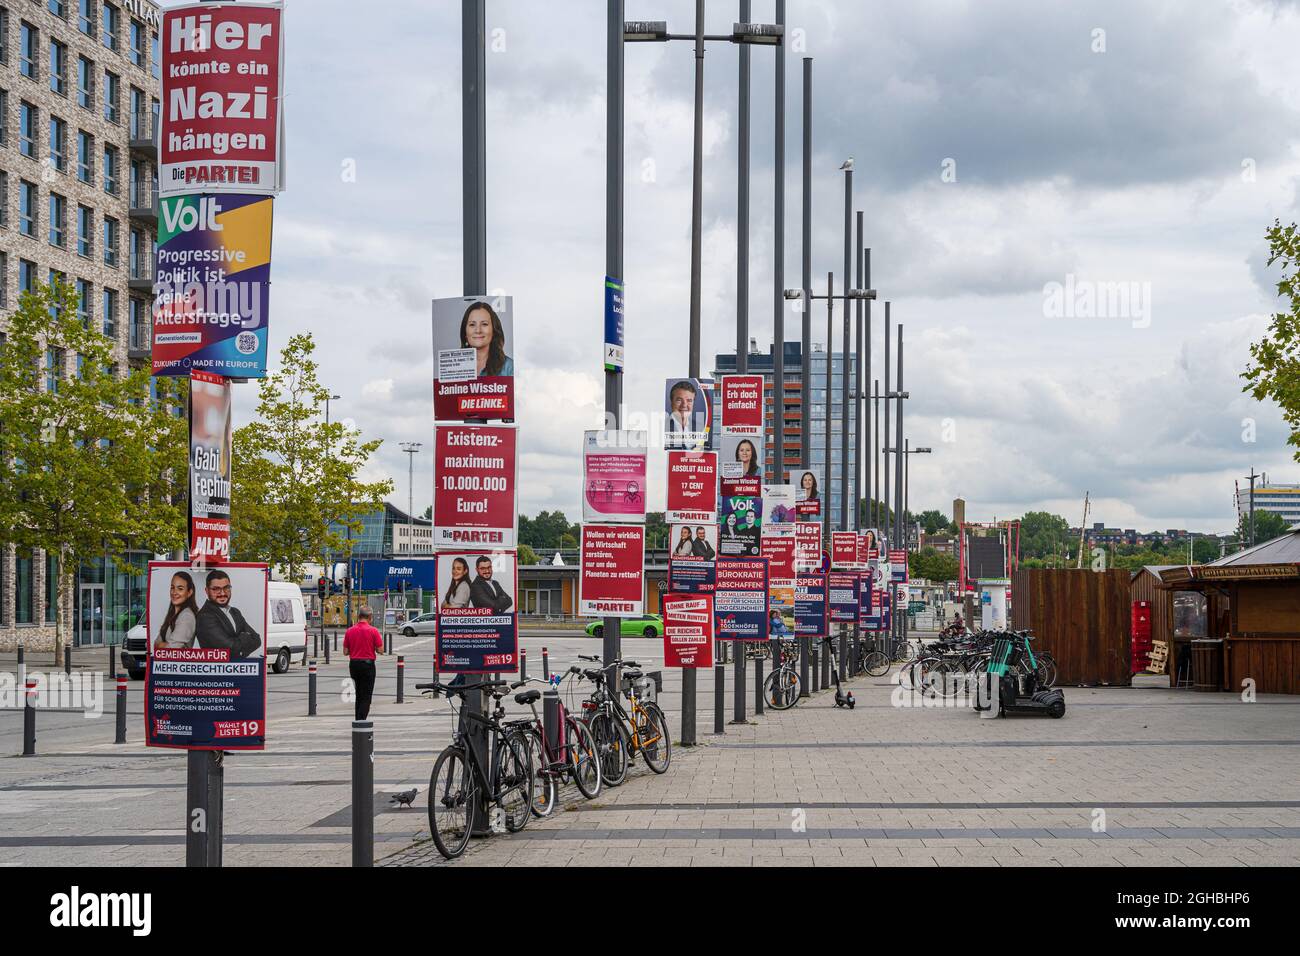 Walhlkampf zur Bundestagswahl 2021 Wahlplakate zur Bundestagswahl im Stadtgebiet Kiels mit teilweise unsinnigen oder grenzwertigen Aussagen Stock Photo